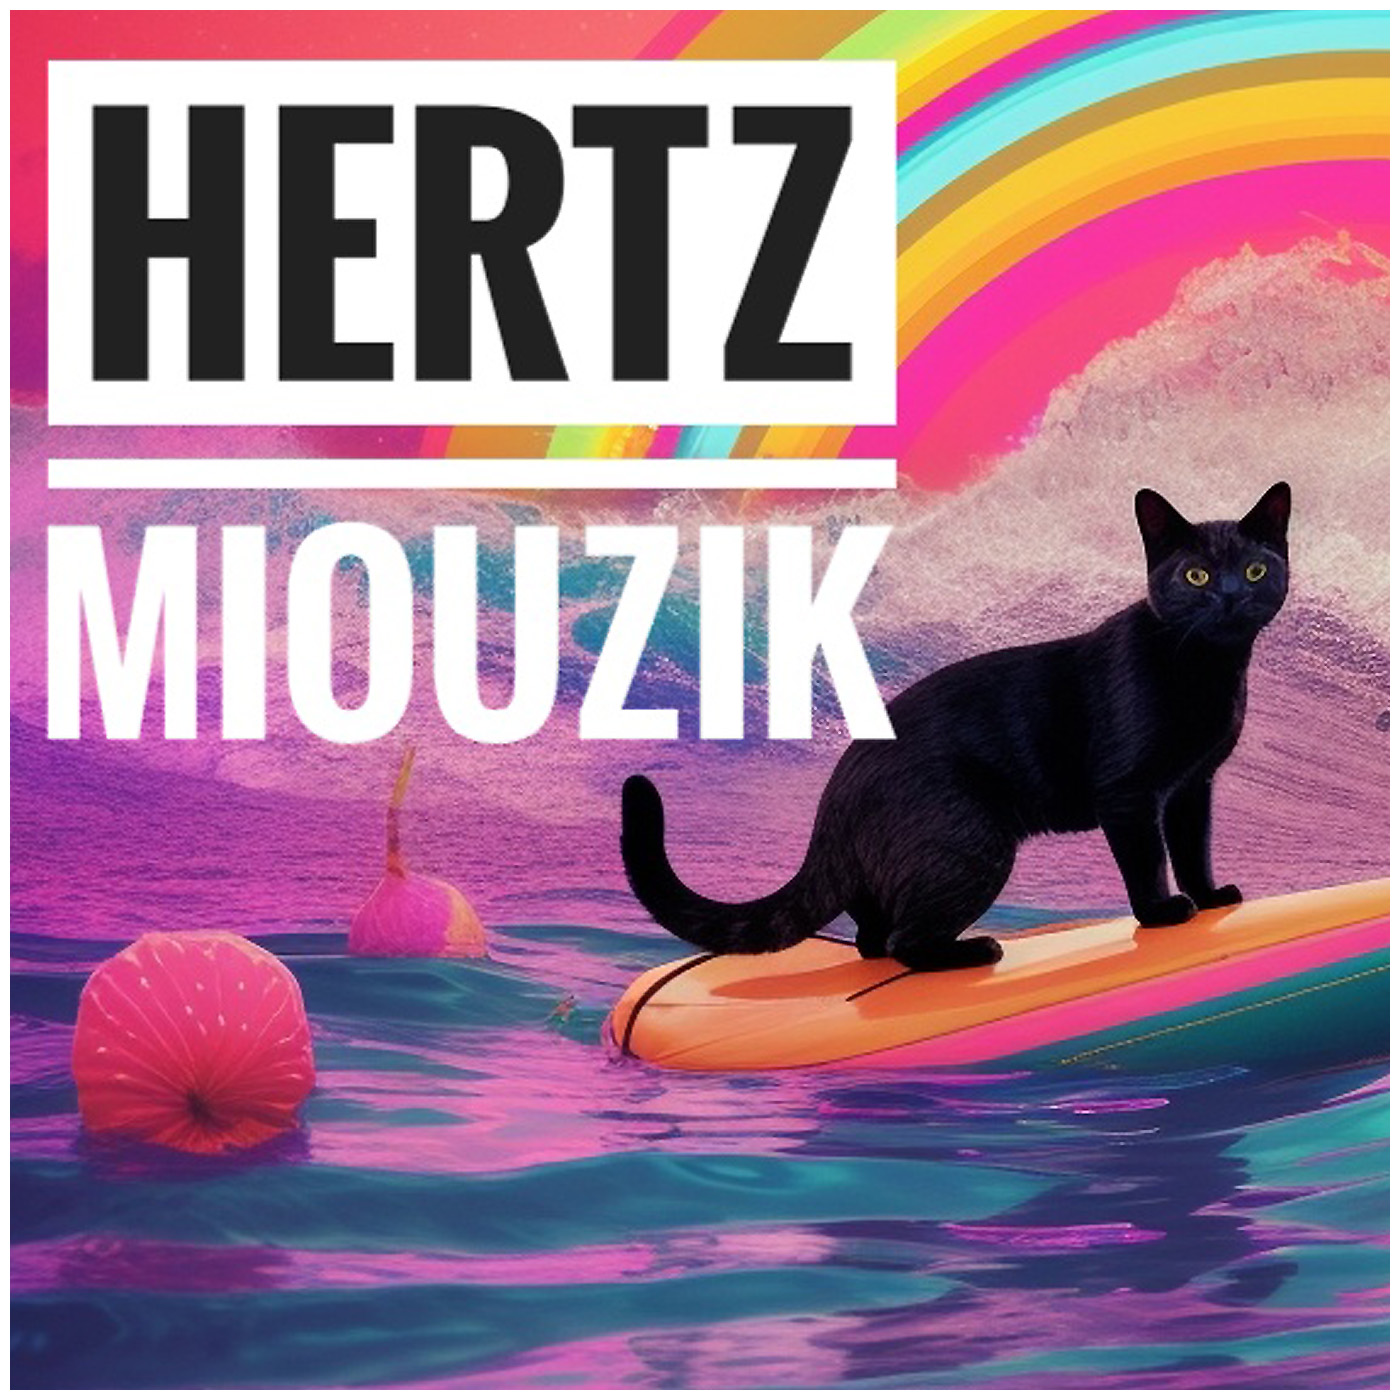 Pochette de l'album HERTZ Miouzik